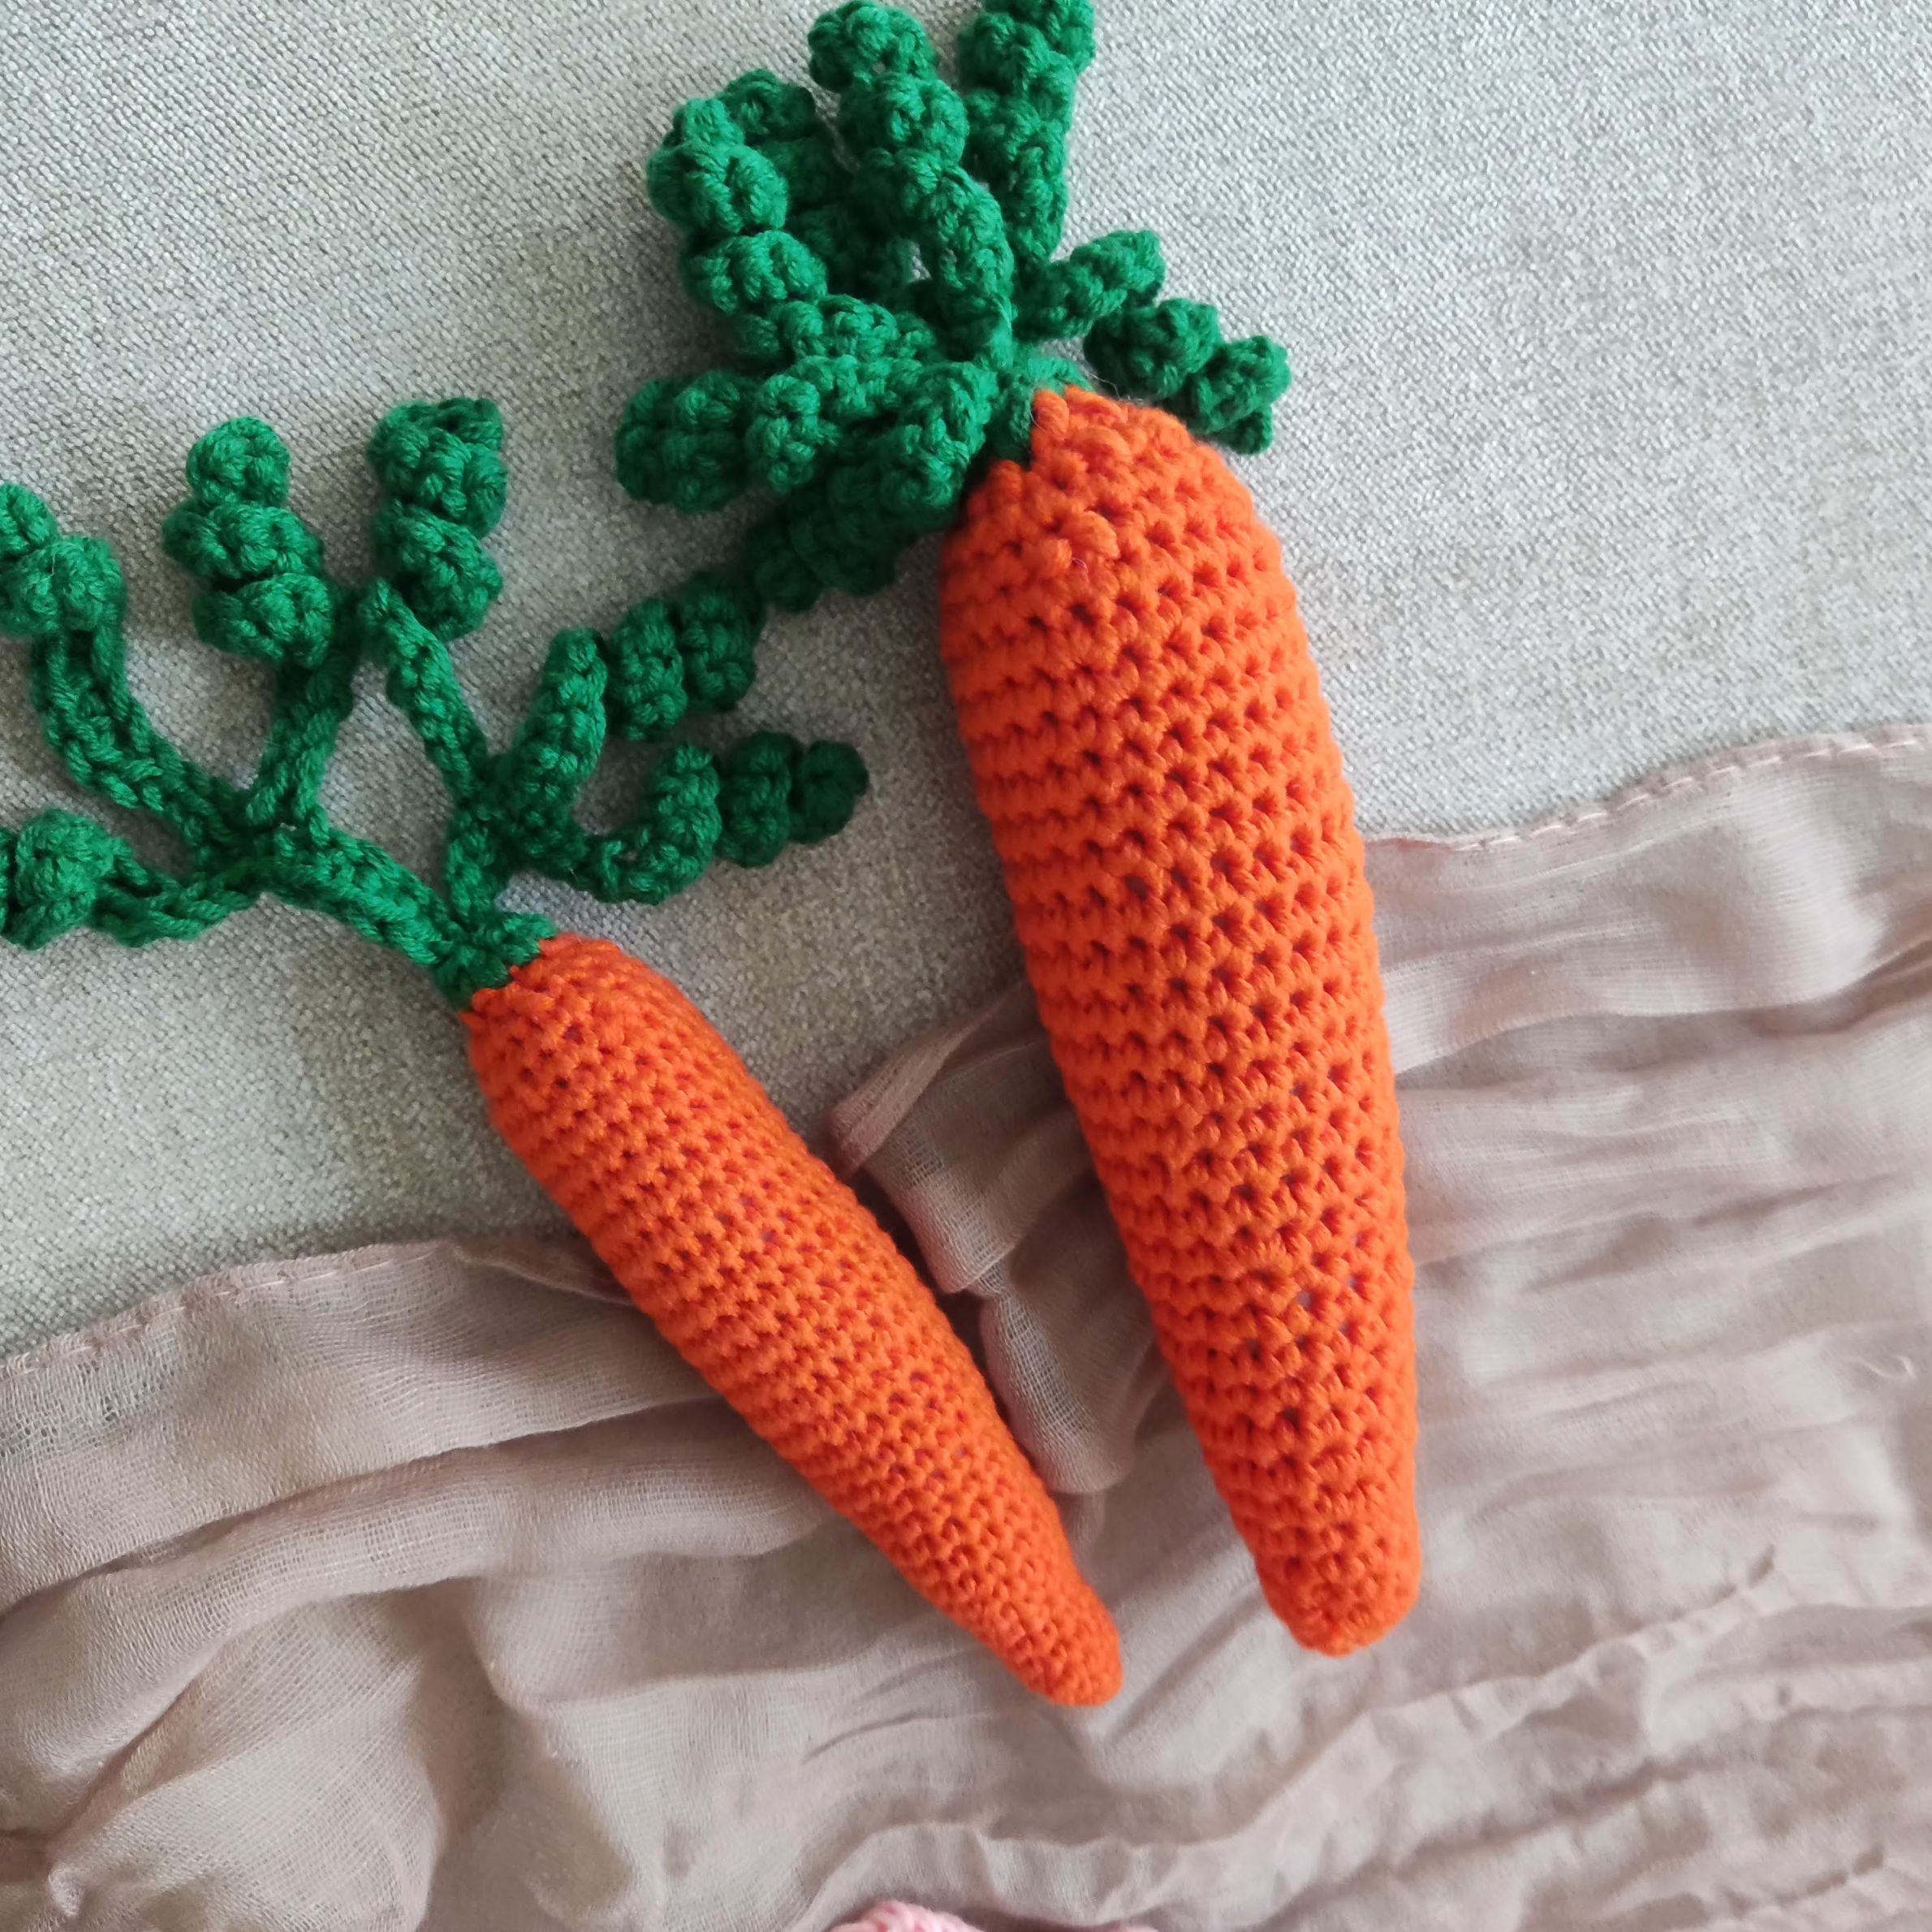 Crochet carrot free pattern